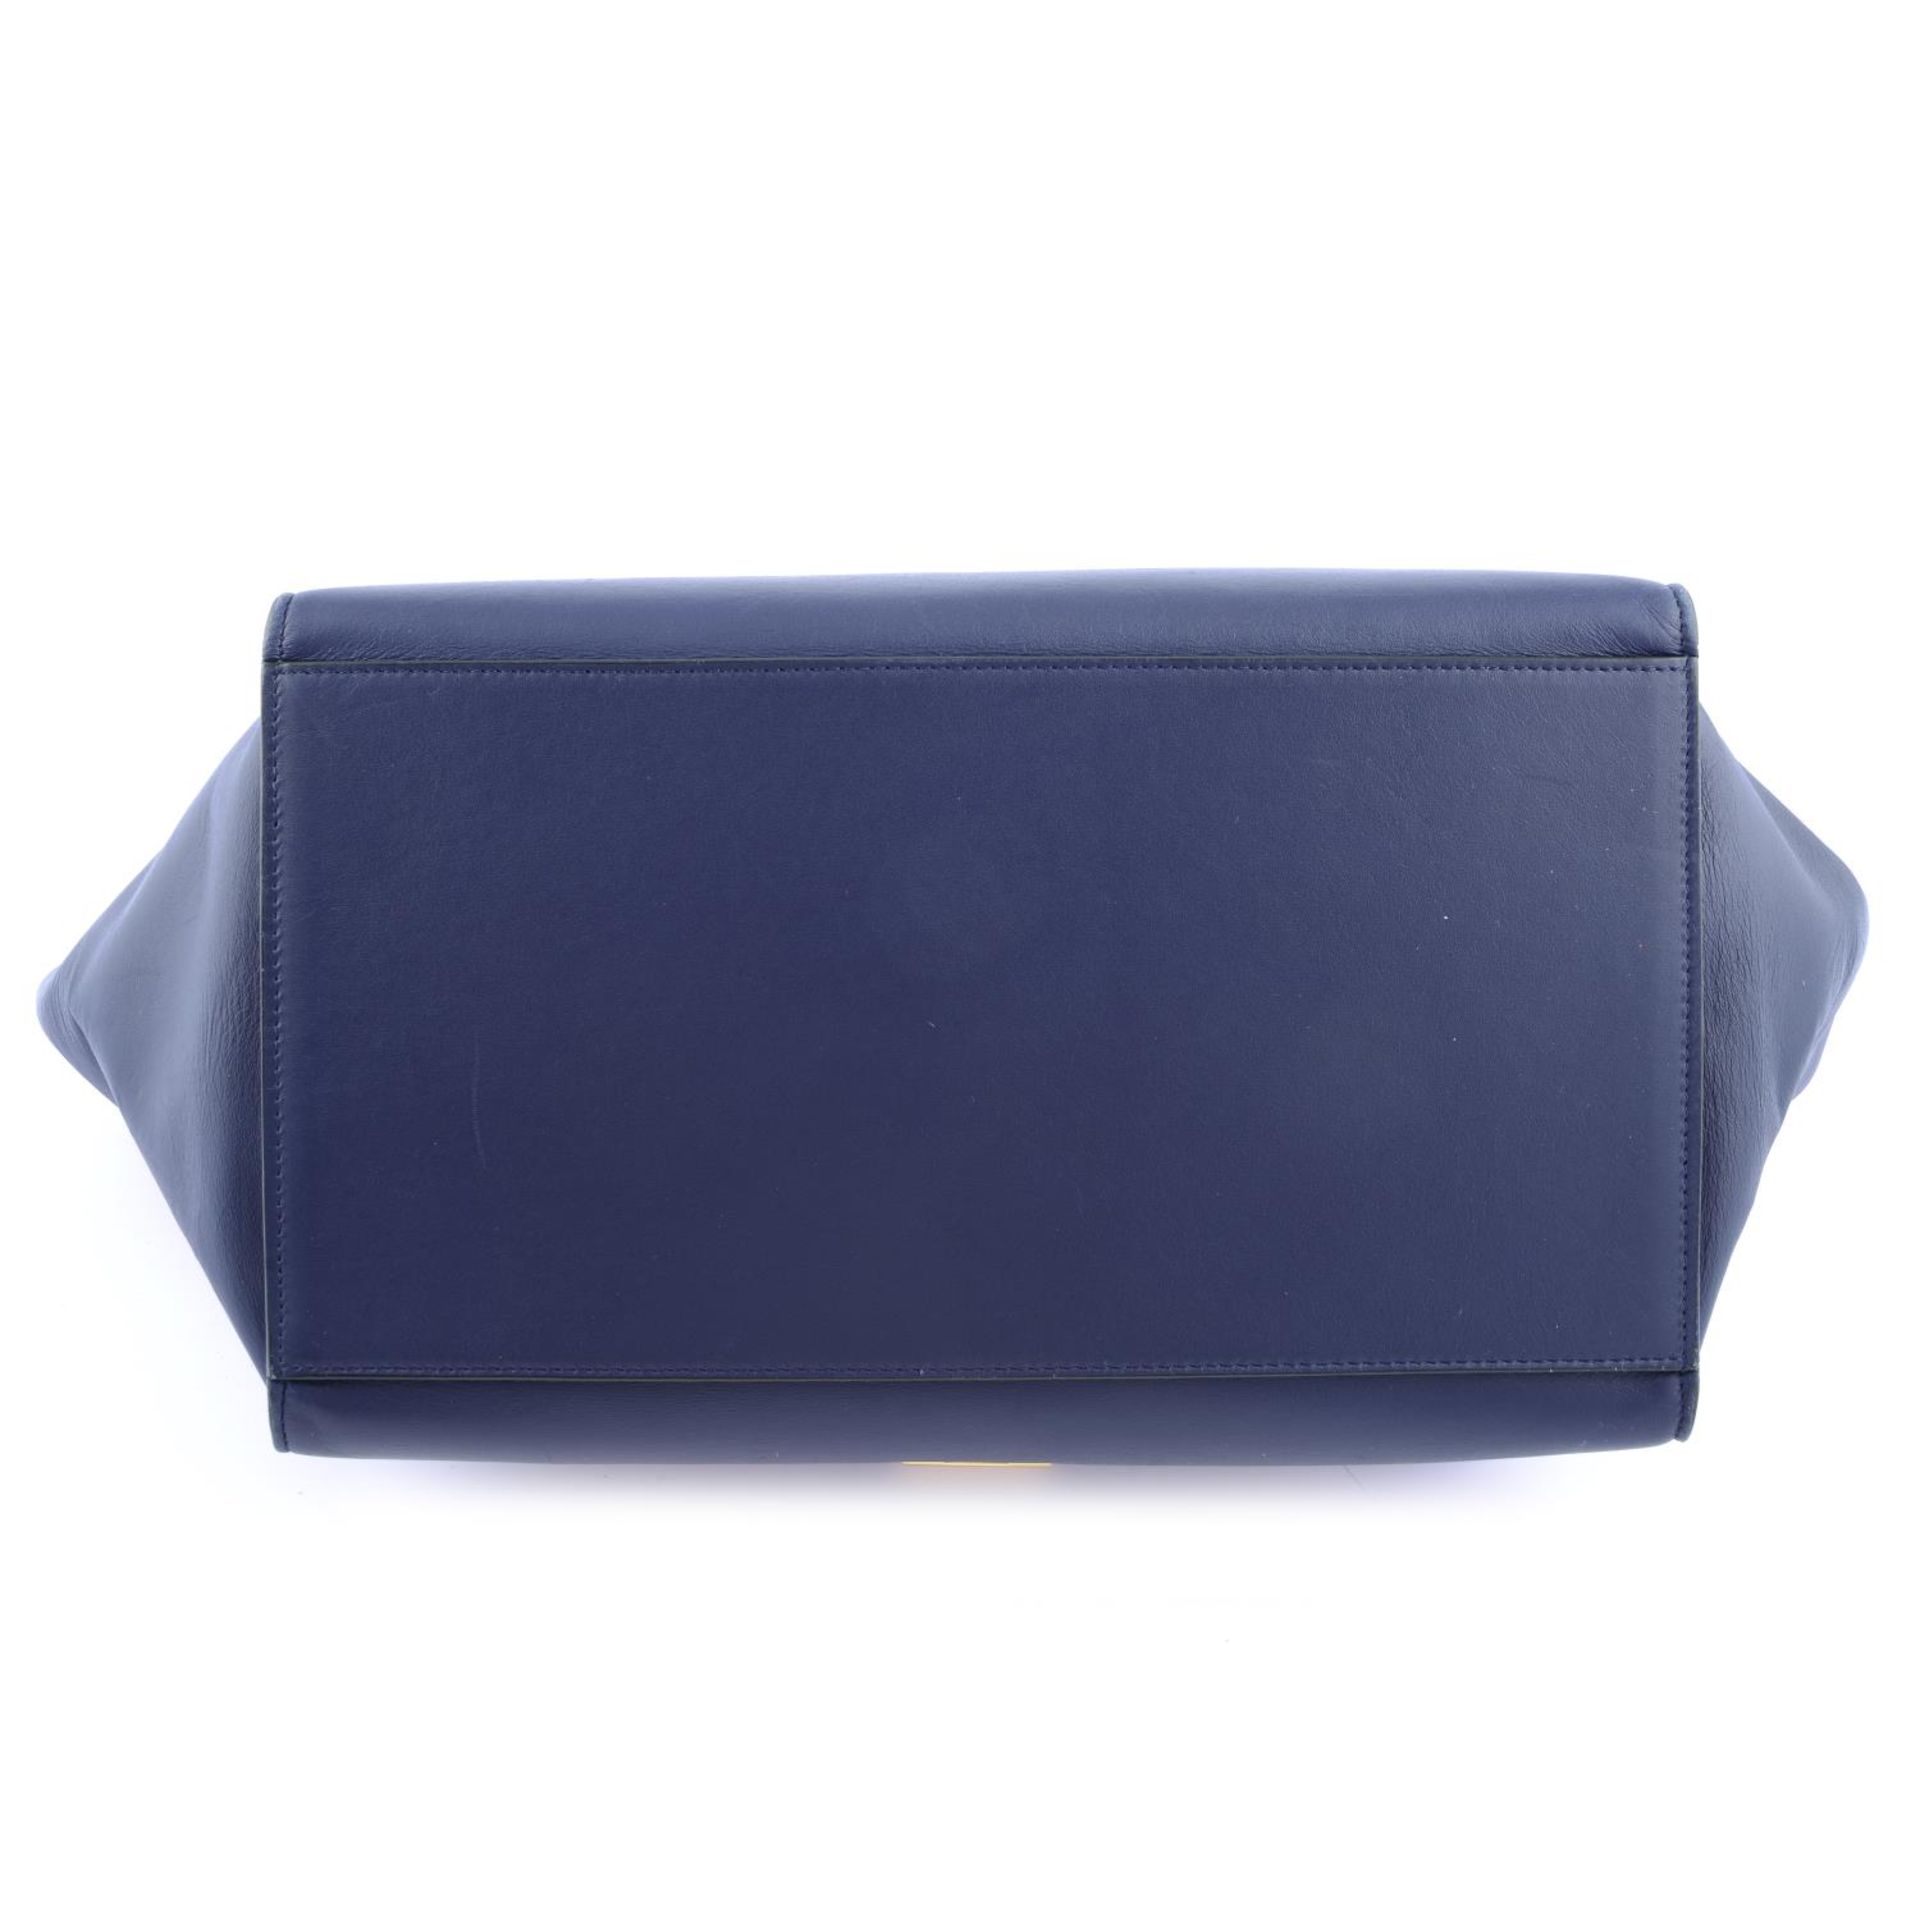 CÉLINE - a blue leather Trapeze handbag. - Bild 4 aus 4